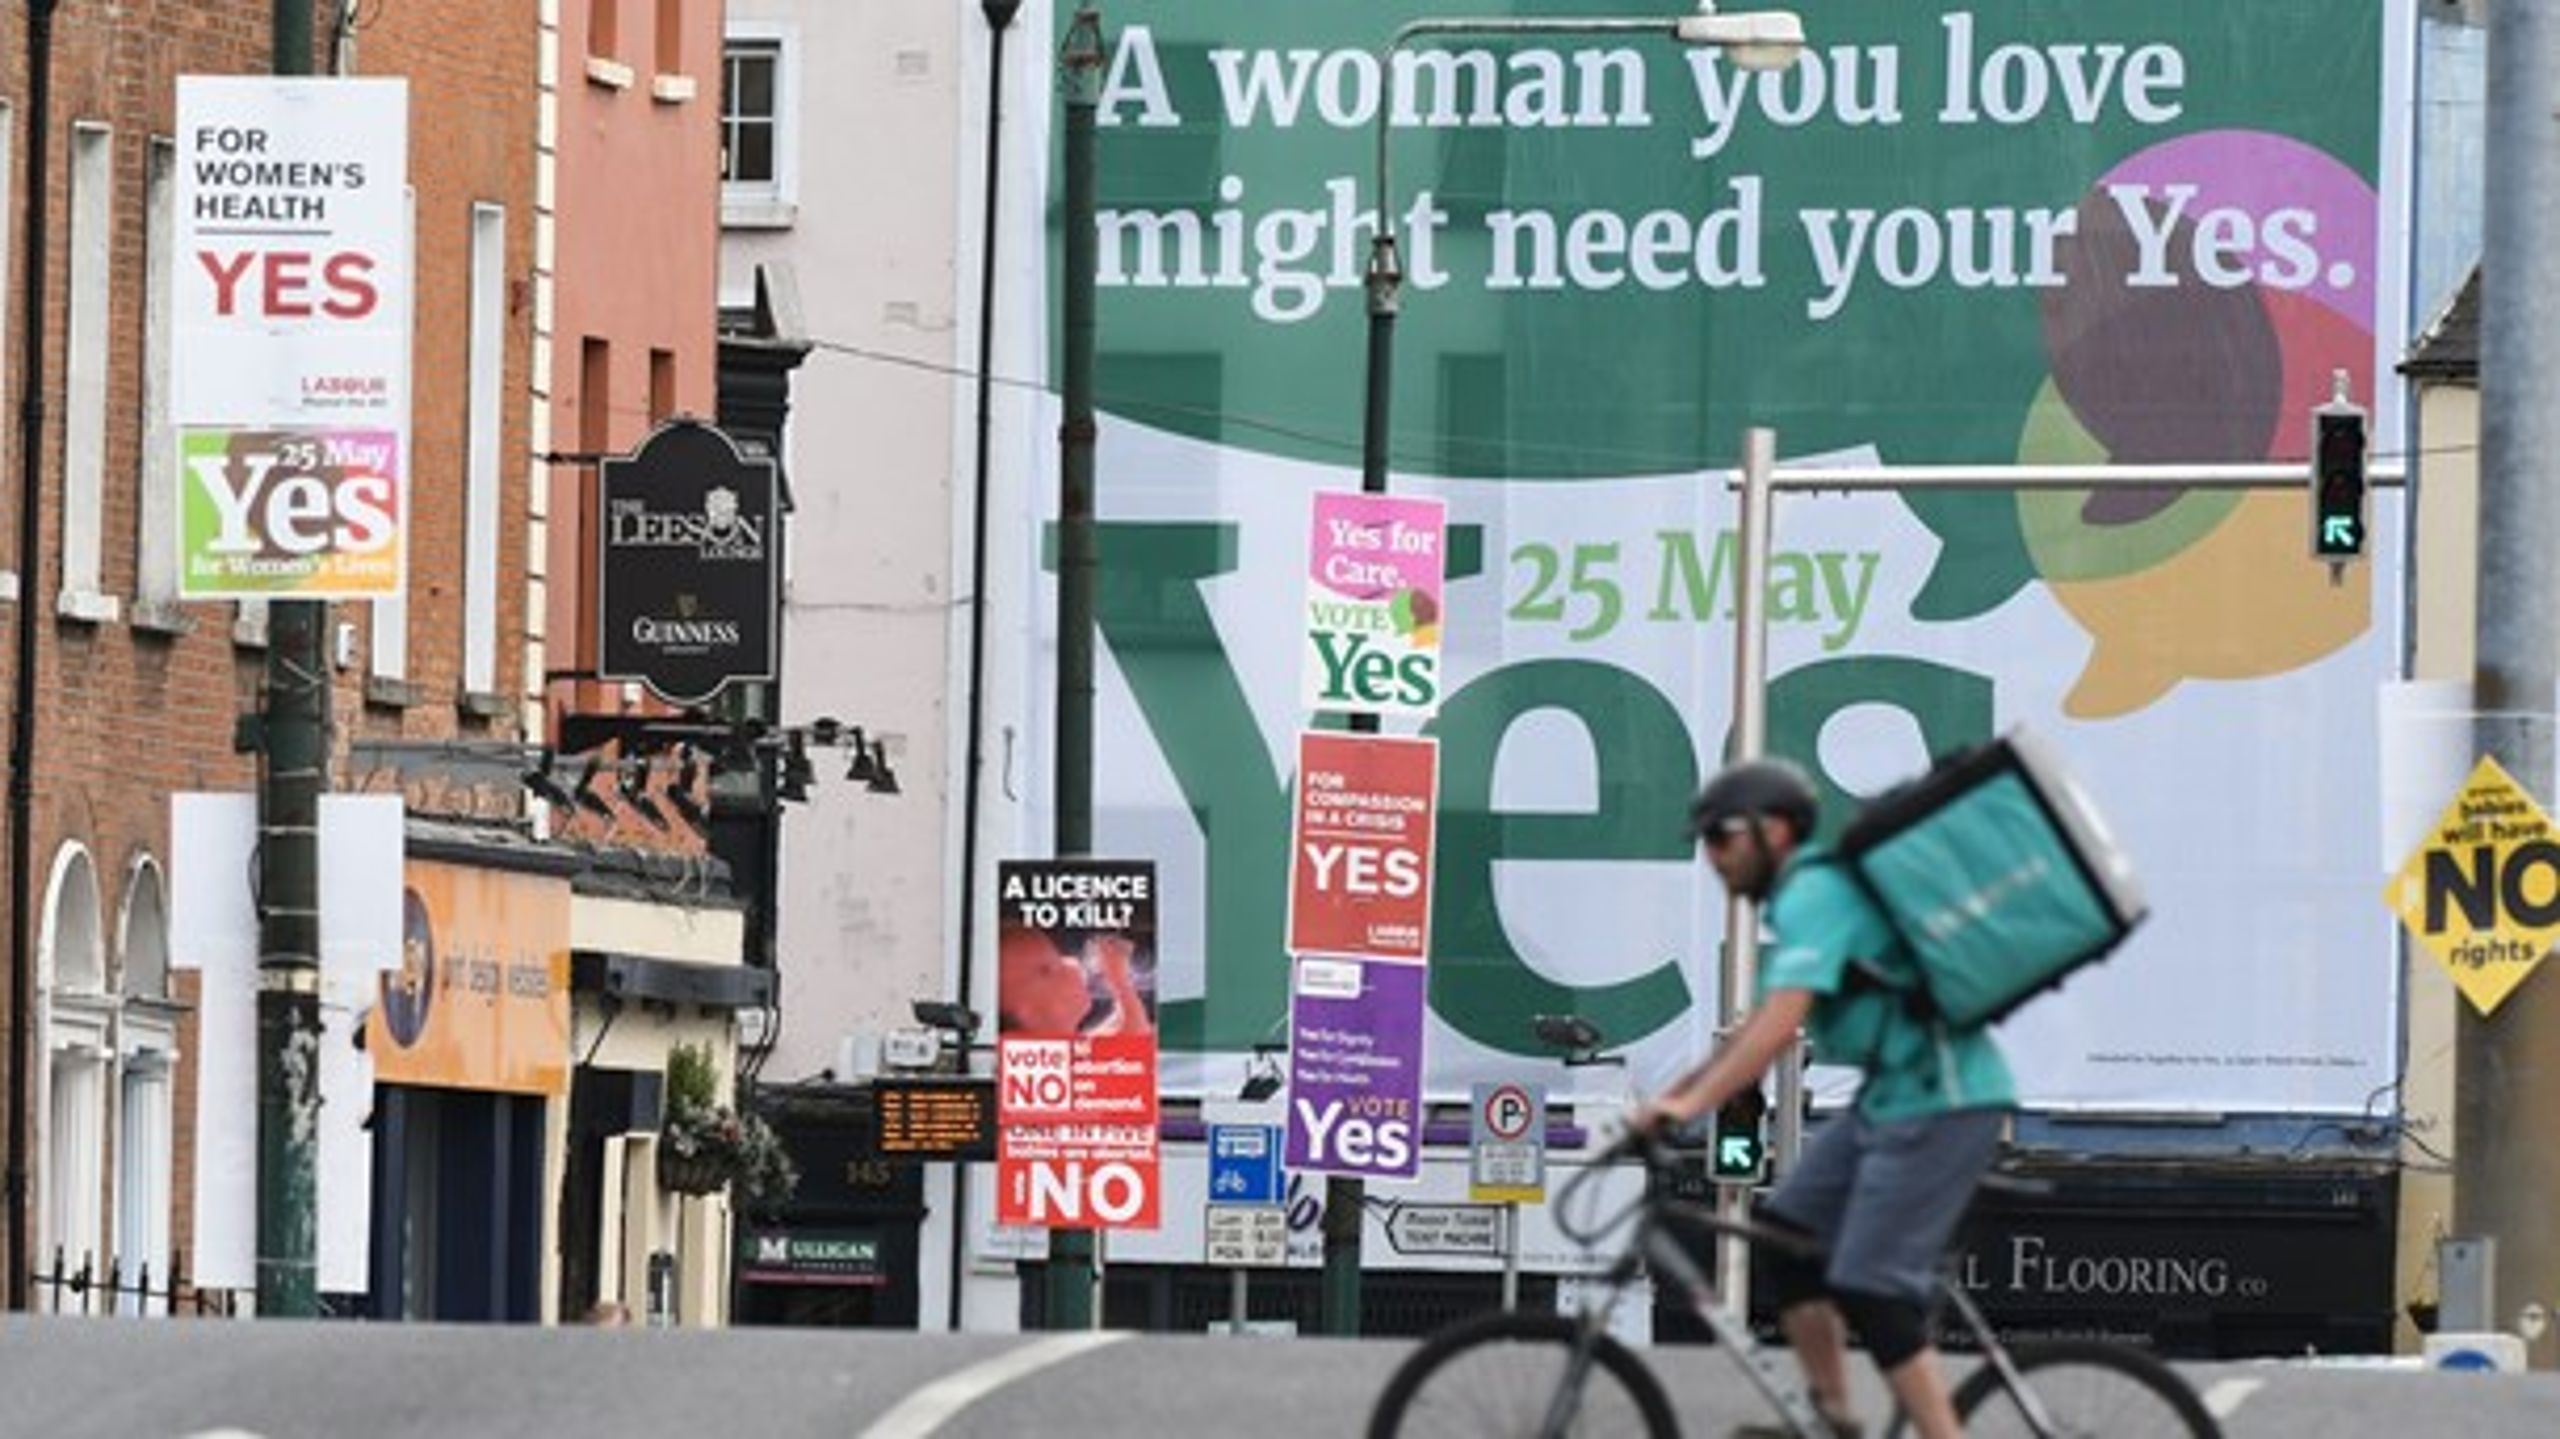 Valgbudskaber i Dublins gader forud for den irske folkeafstemingen om fri abort.